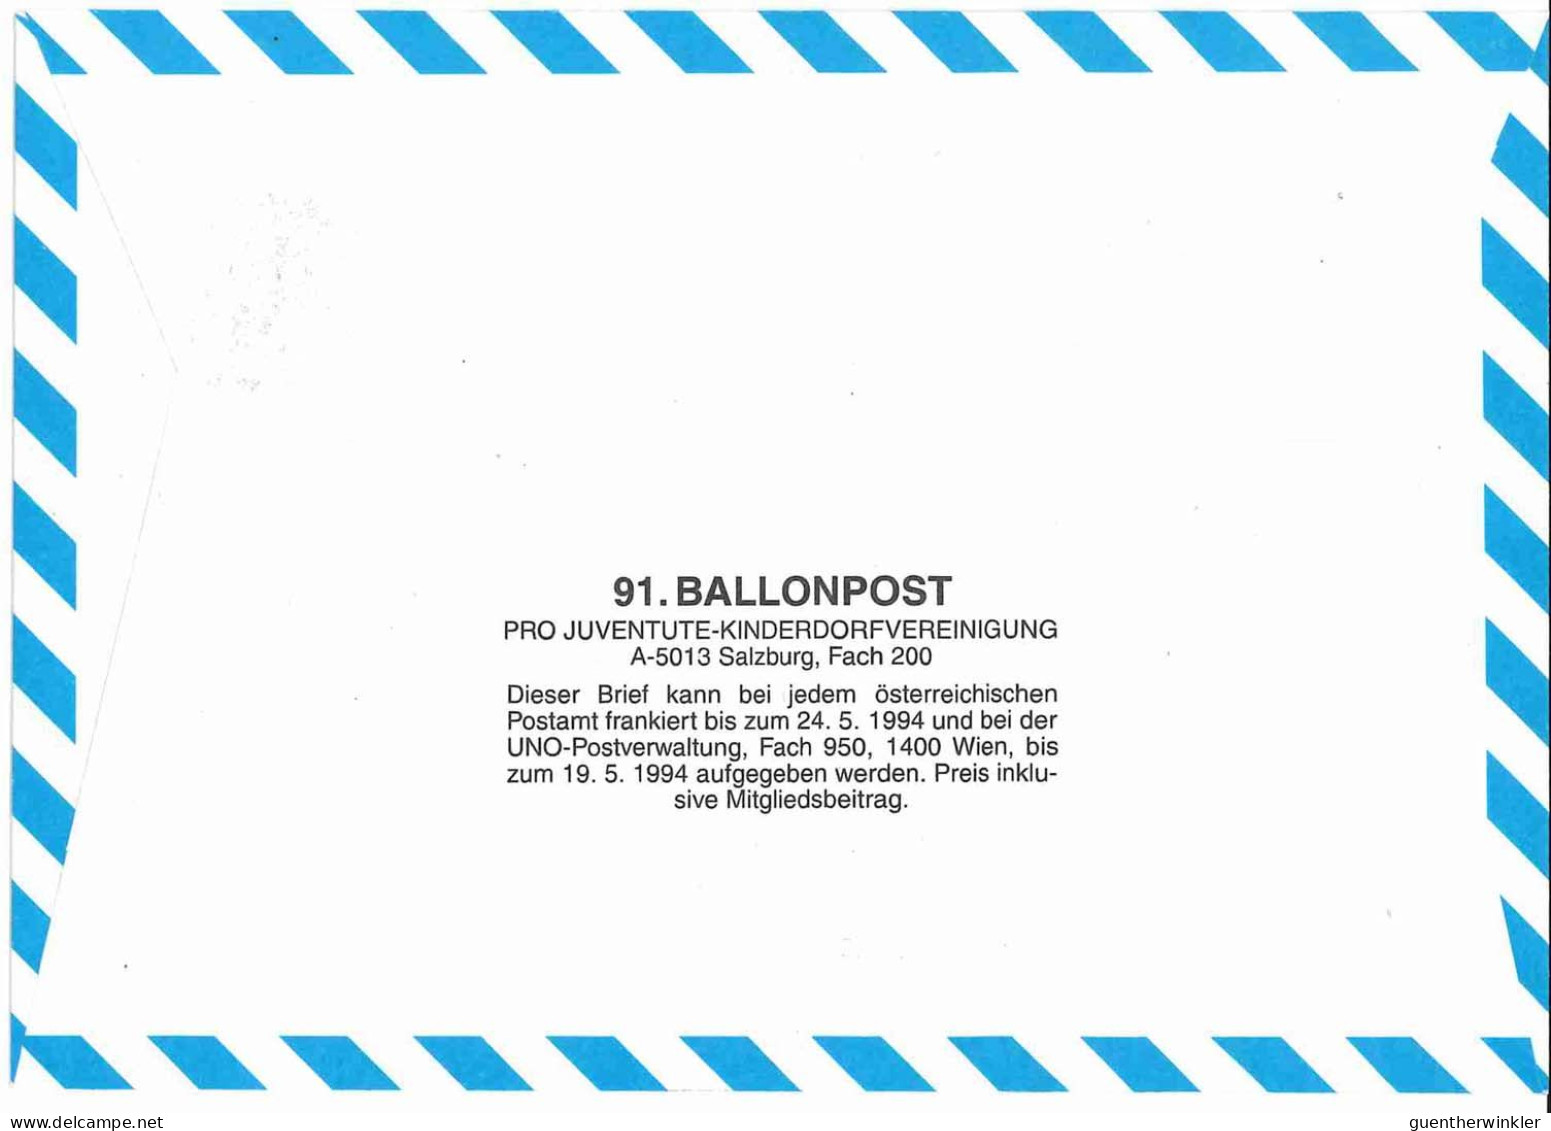 Regulärer Ballonpostflug Nr. 91a Der Pro Juventute [RBP91a] - Ballonpost